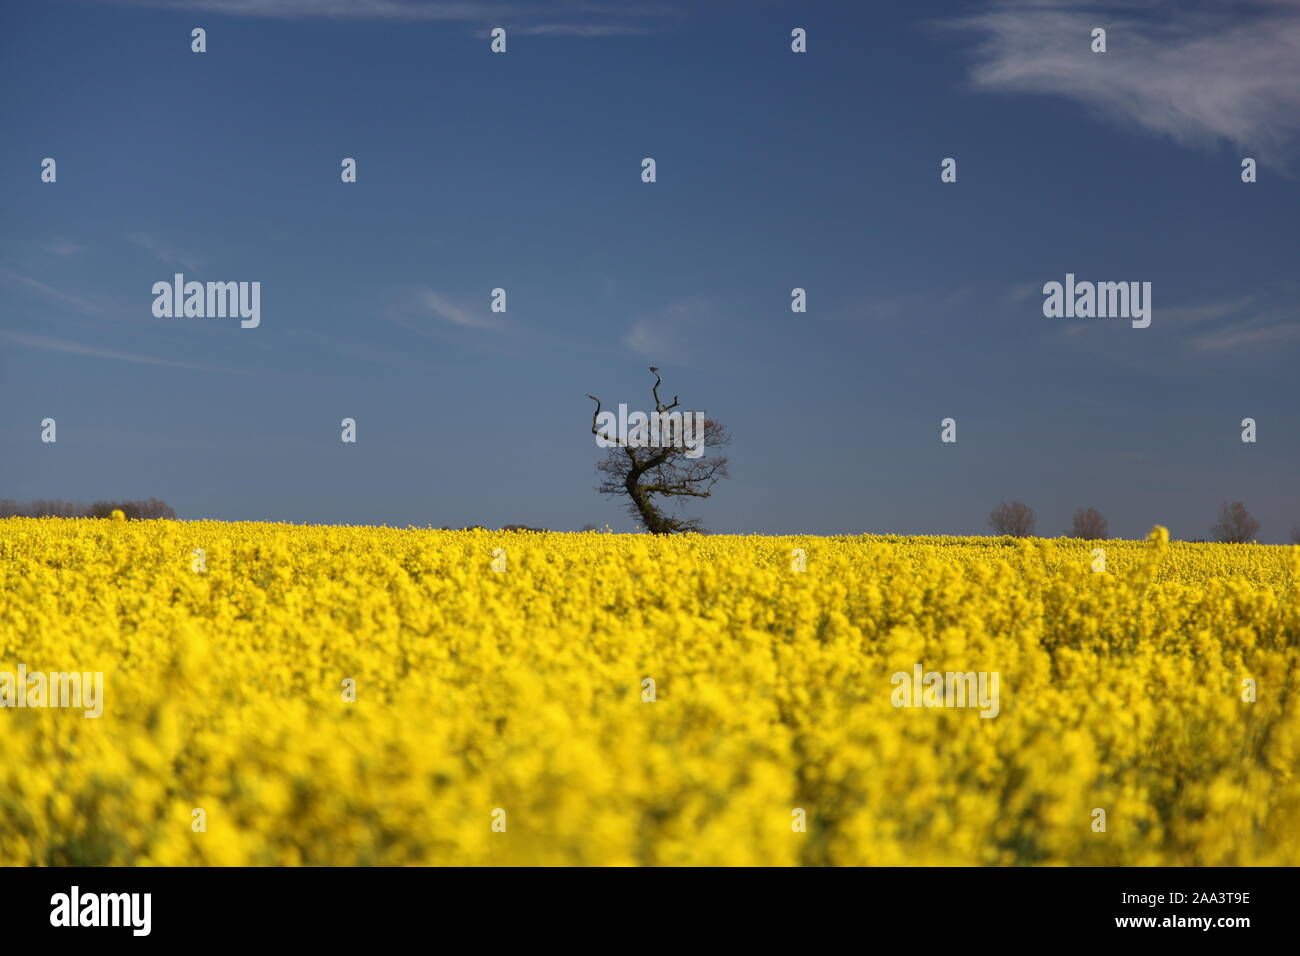 La campagne, la récolte de colza en fleur jaune Photo Stock - Alamy